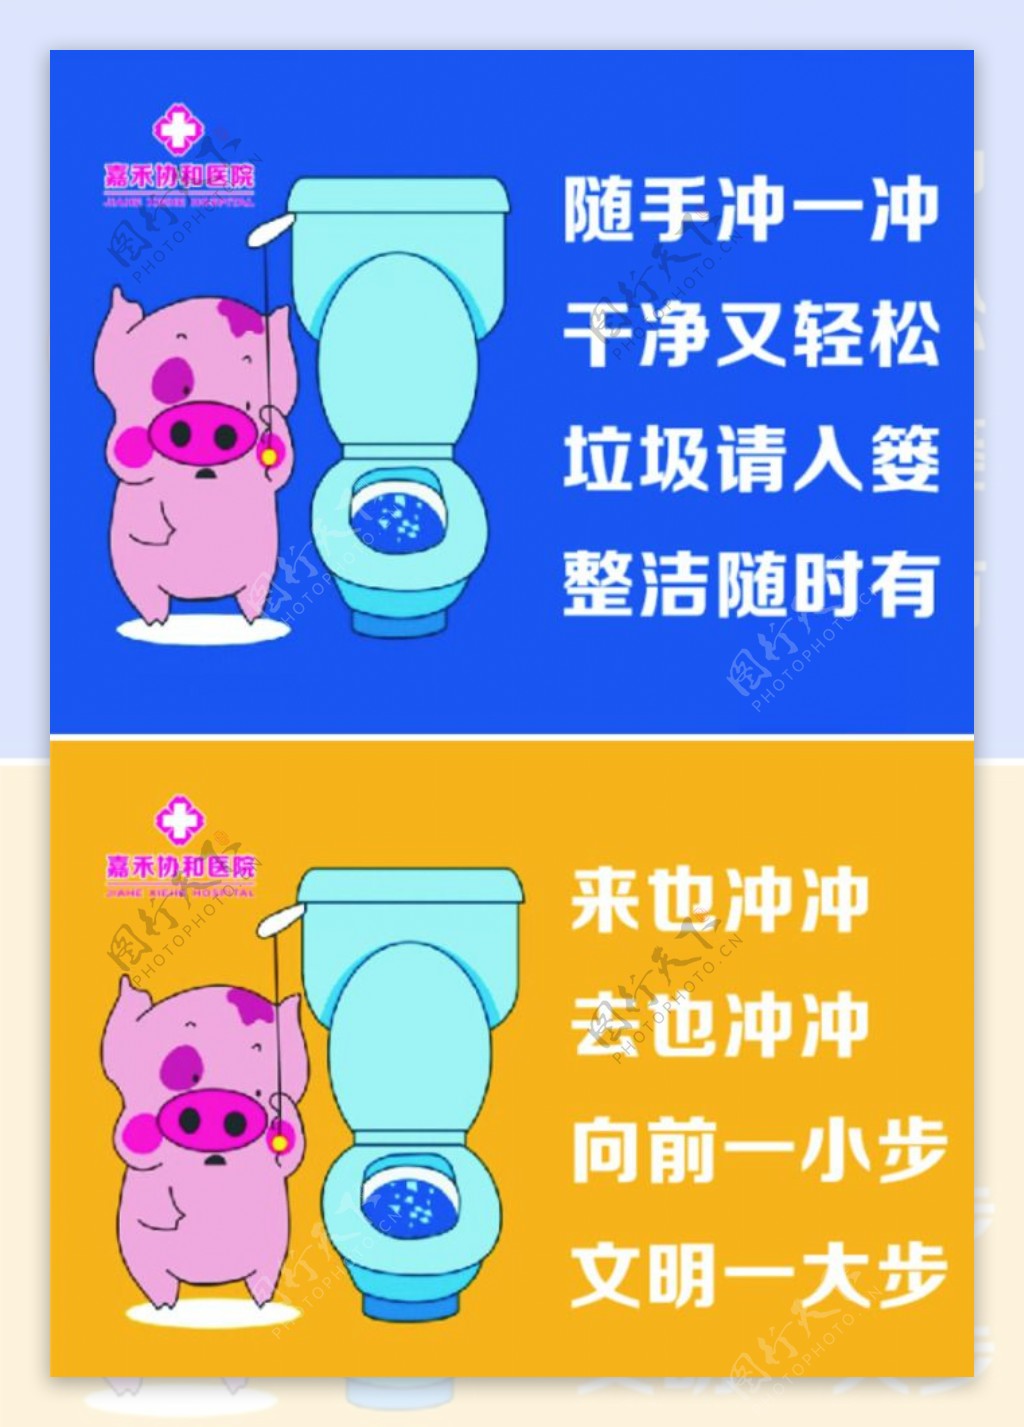 厕所文明标语提示语图片